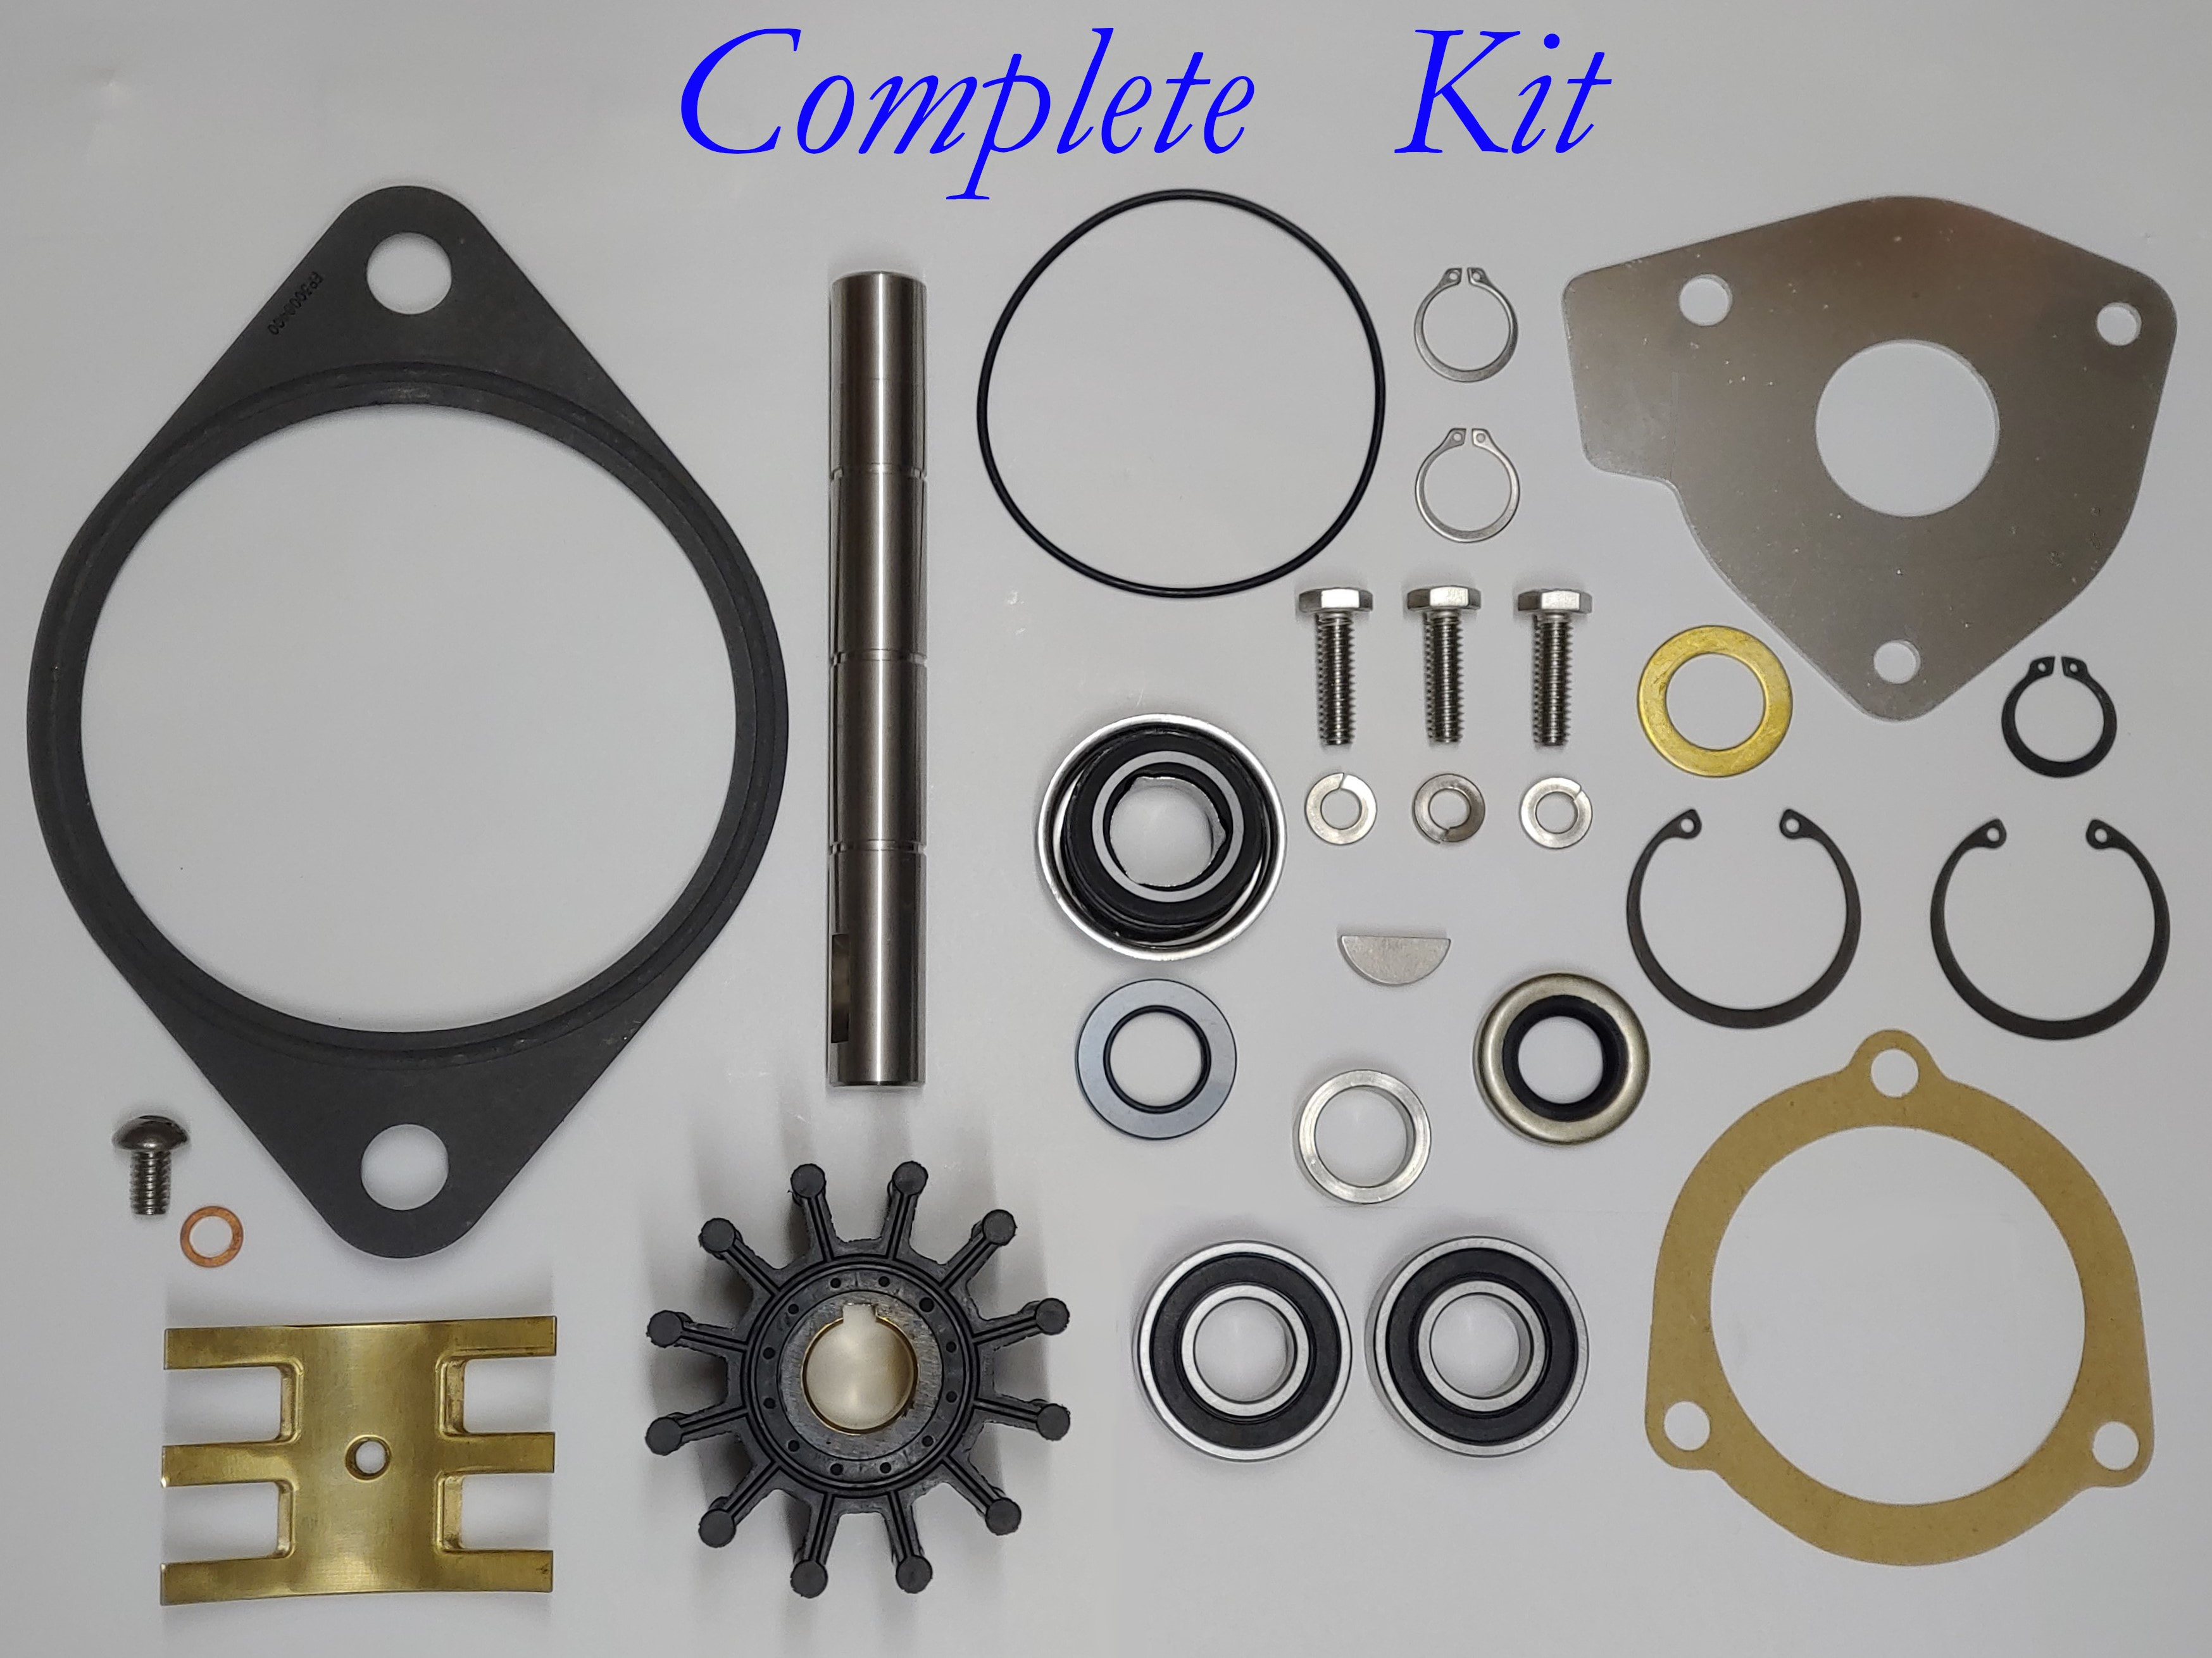 Repair Kit for Cummins Pumps 3912019 , 3907458 and Sherwood M70 , M71